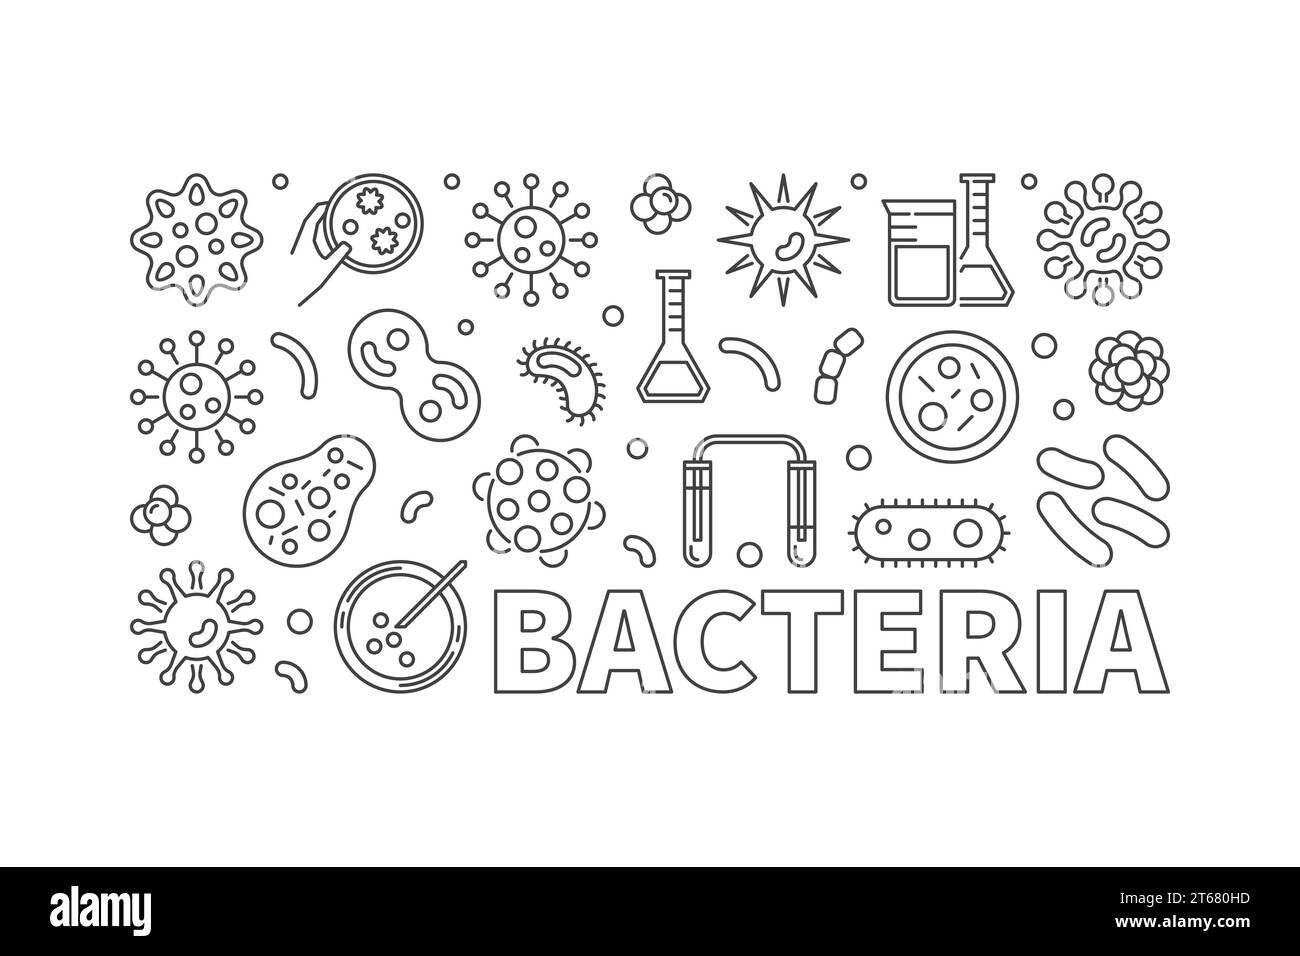 Bannière vectorielle de contour de bactéries - illustration de concept faite avec des icônes de contour de bactéries et de microbes Illustration de Vecteur